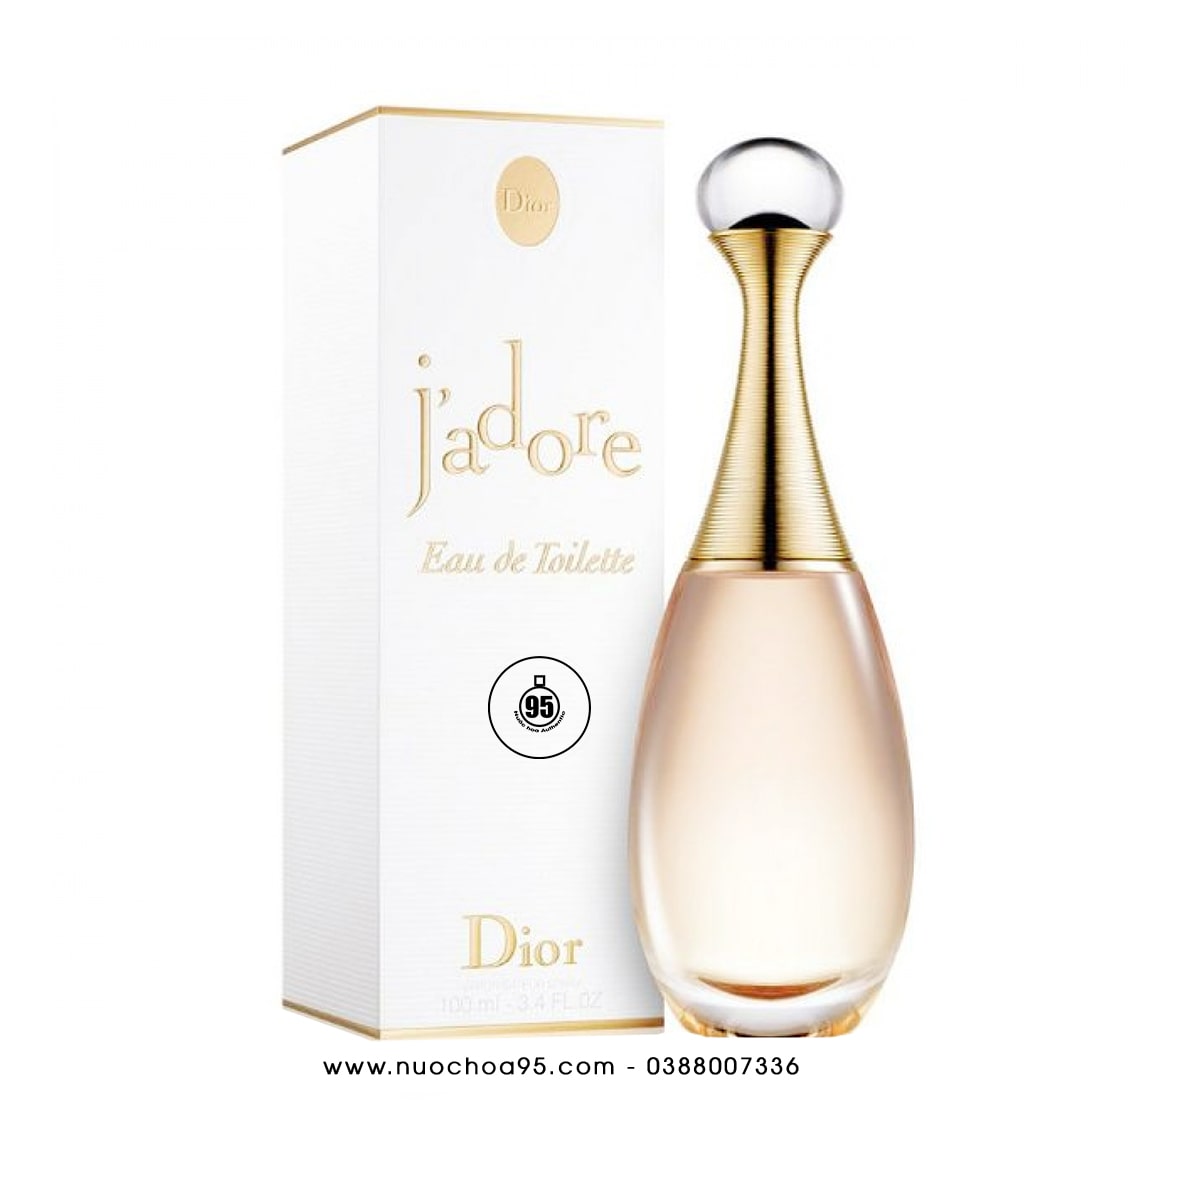 Logo Christian Dior MÌNH Parfums Christian Dior J  Adore nước Hoa  nước  hoa png tải về  Miễn phí trong suốt Văn Bản png Tải về